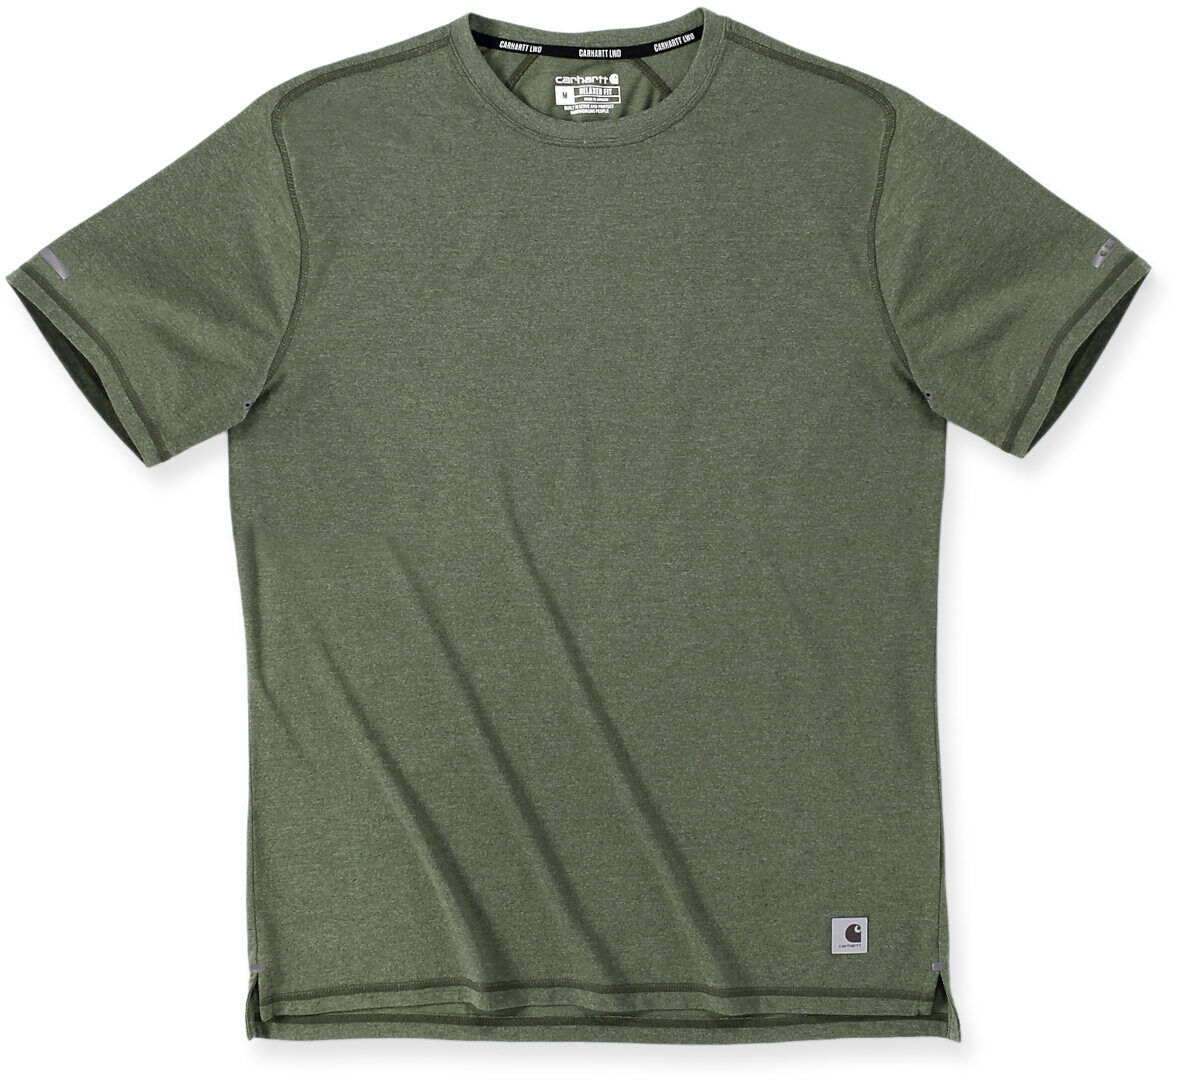 Carhartt Lightweight Durable Relaxed Fit Camiseta - Verde (2XL)